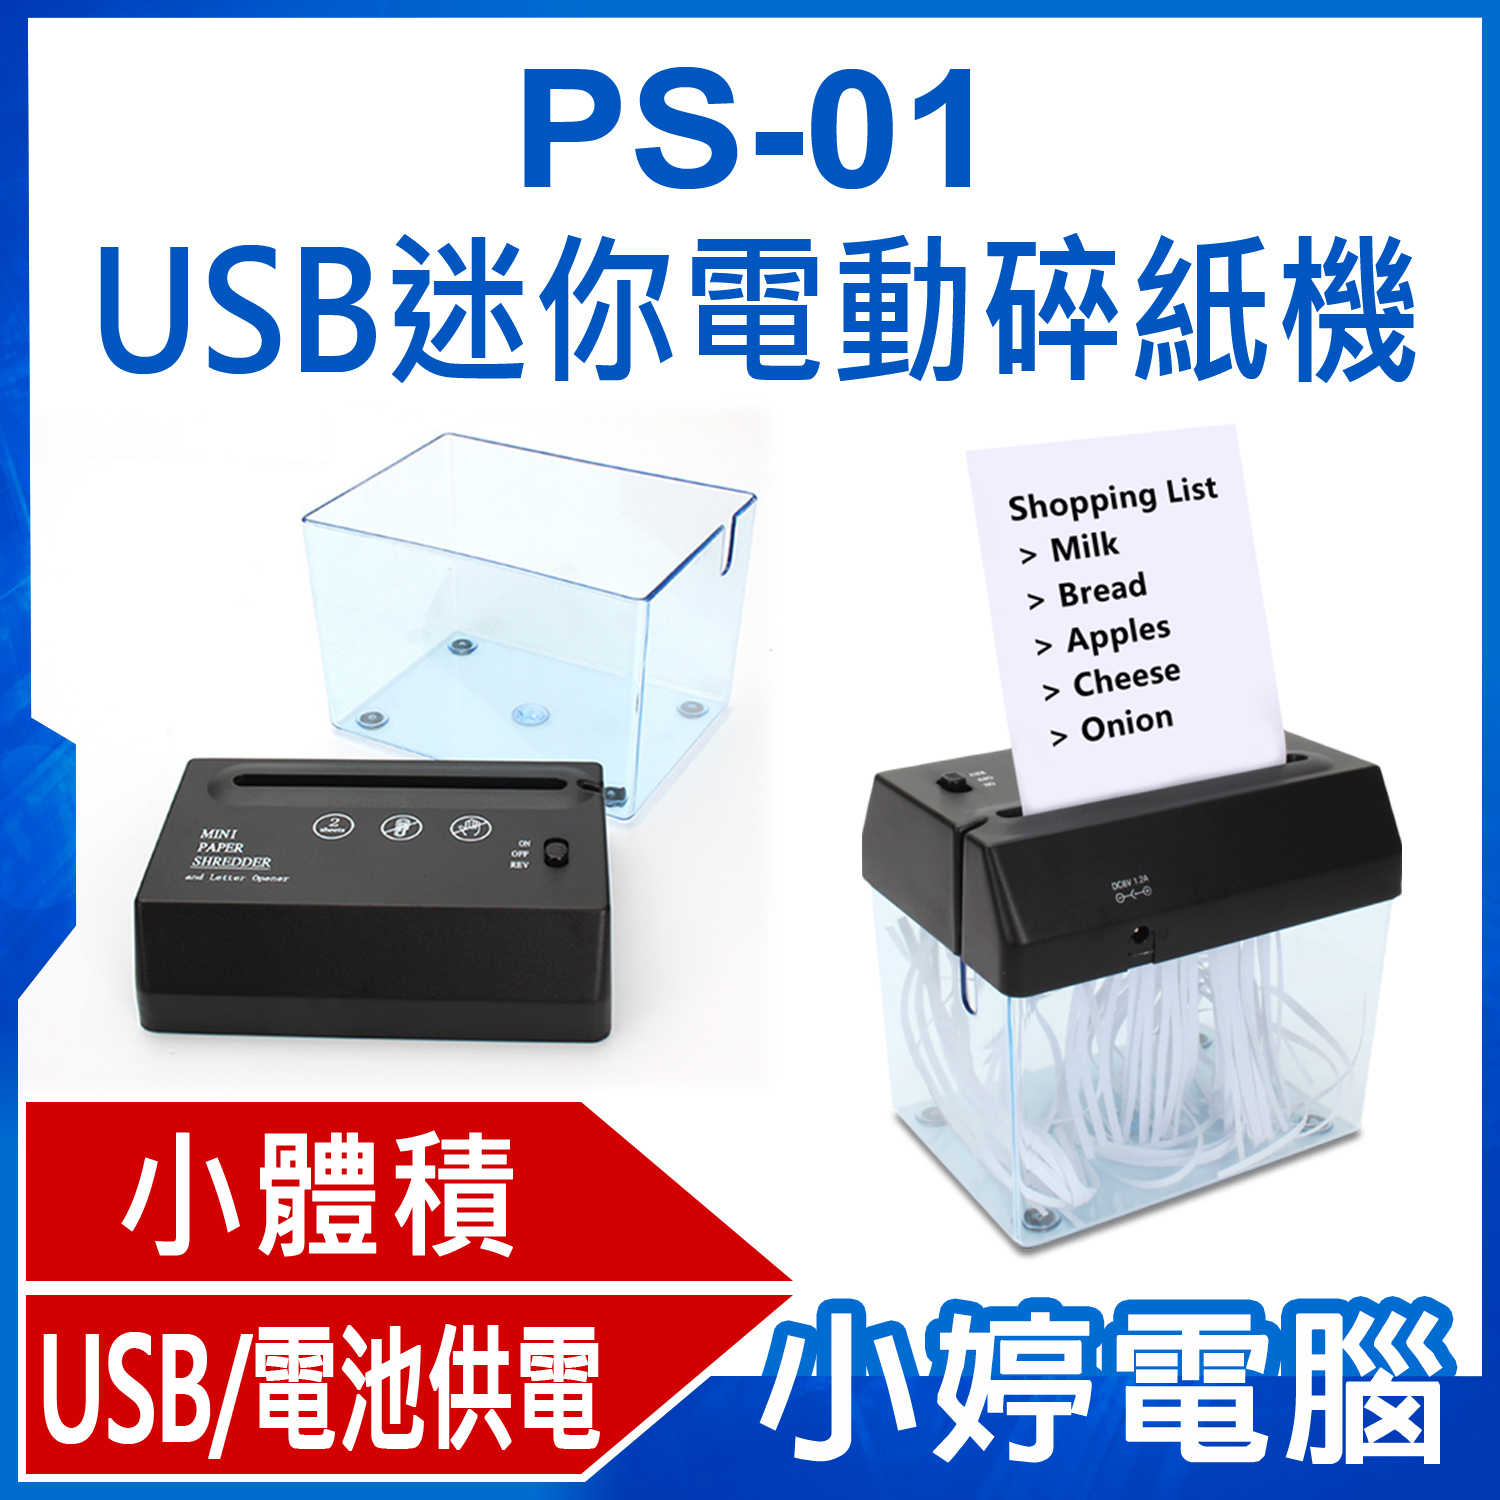 【小婷電腦】PS-01 USB迷你電動碎紙機 小體積 寬入紙口 分離式紙屑箱 適用面廣 USB/電池供電